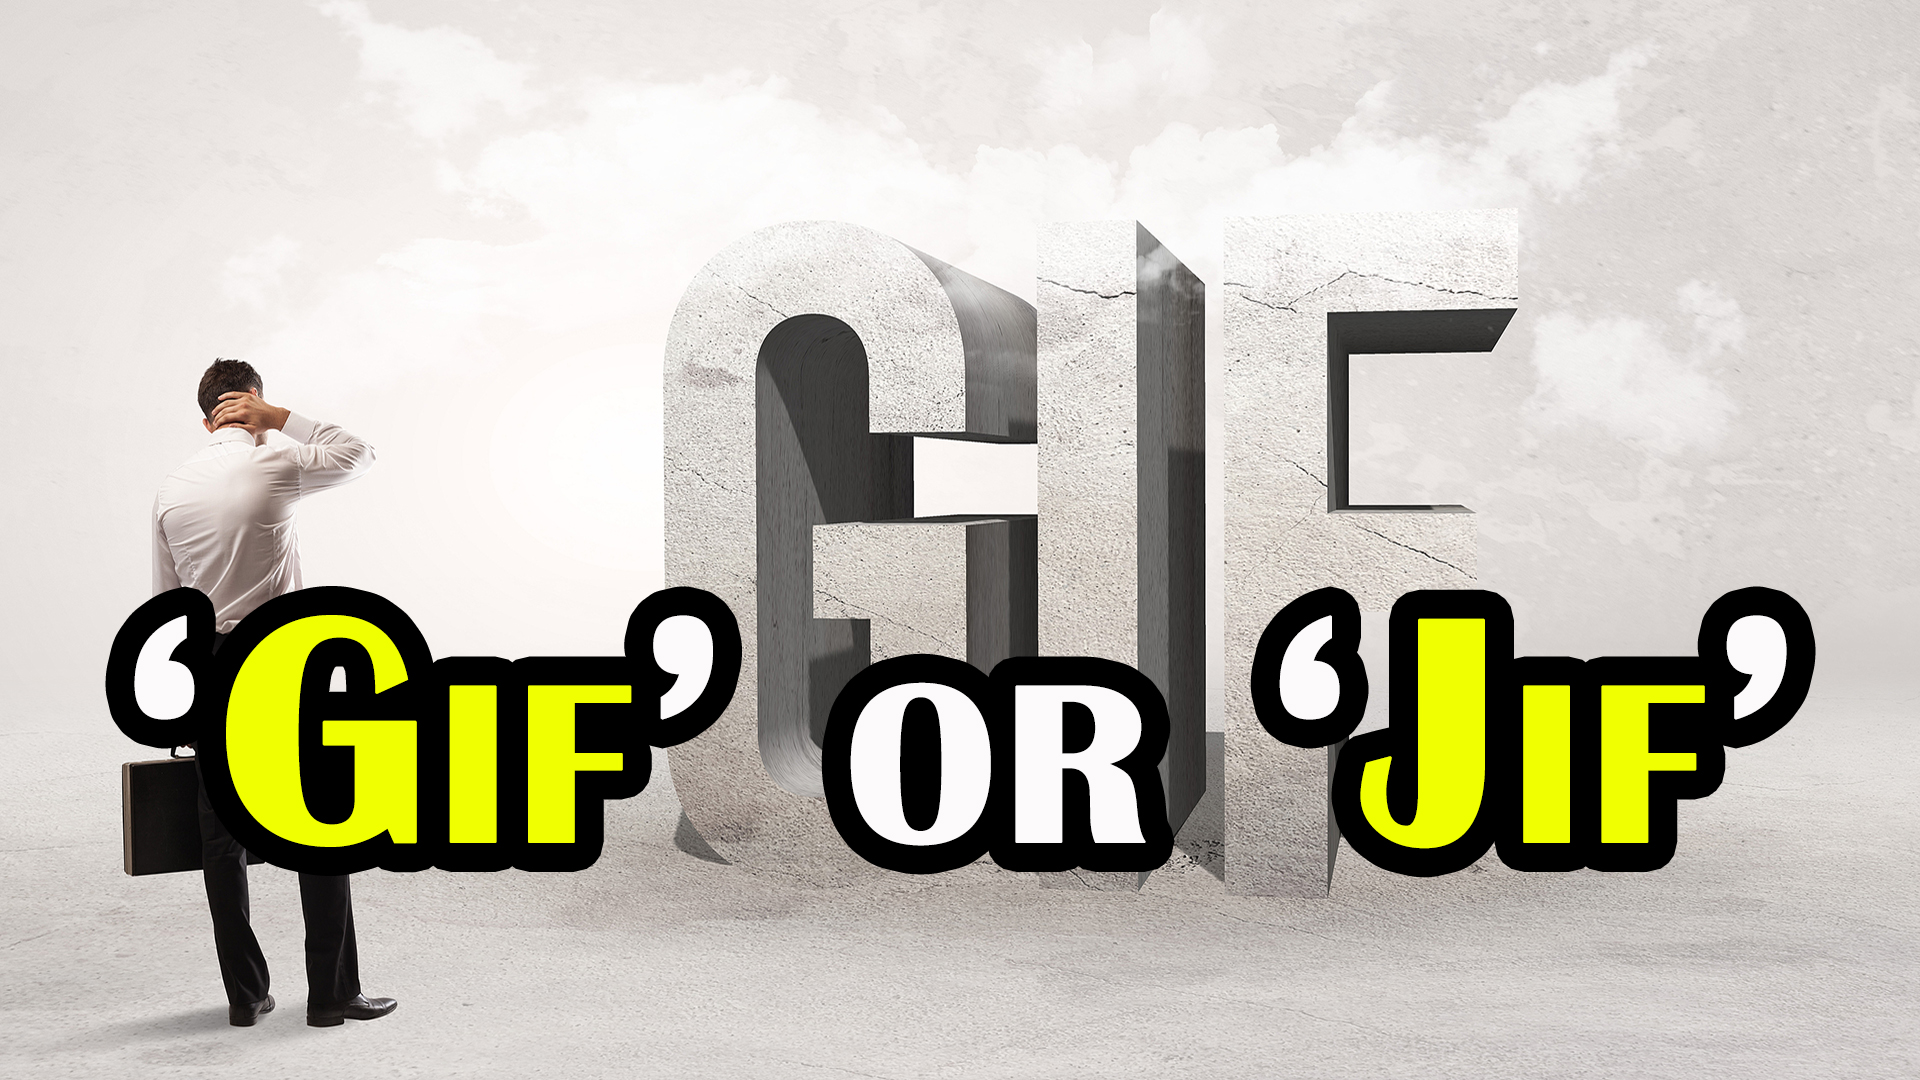 RAGE QUIT - Señor GIF - Pronounced GIF or JIF?